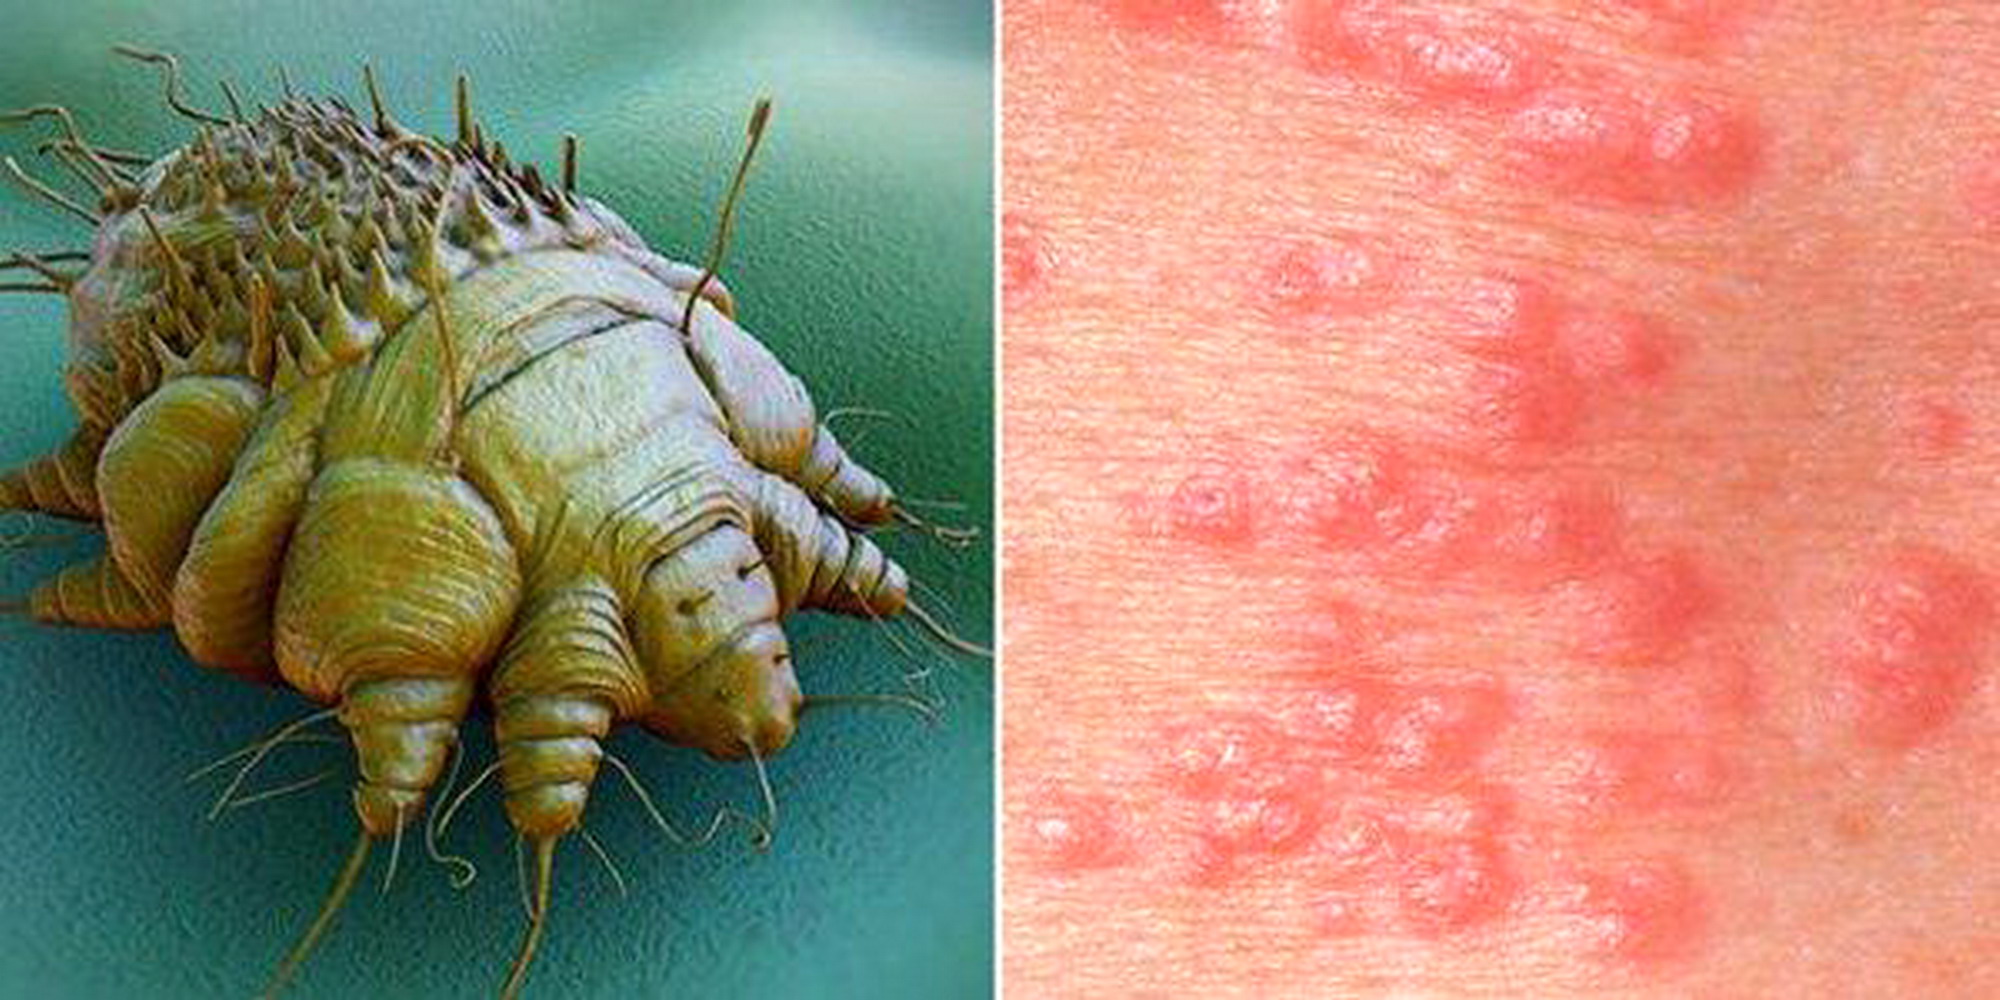 Scabbia su pelle e cuoio capelluto: sintomi, cause e cure